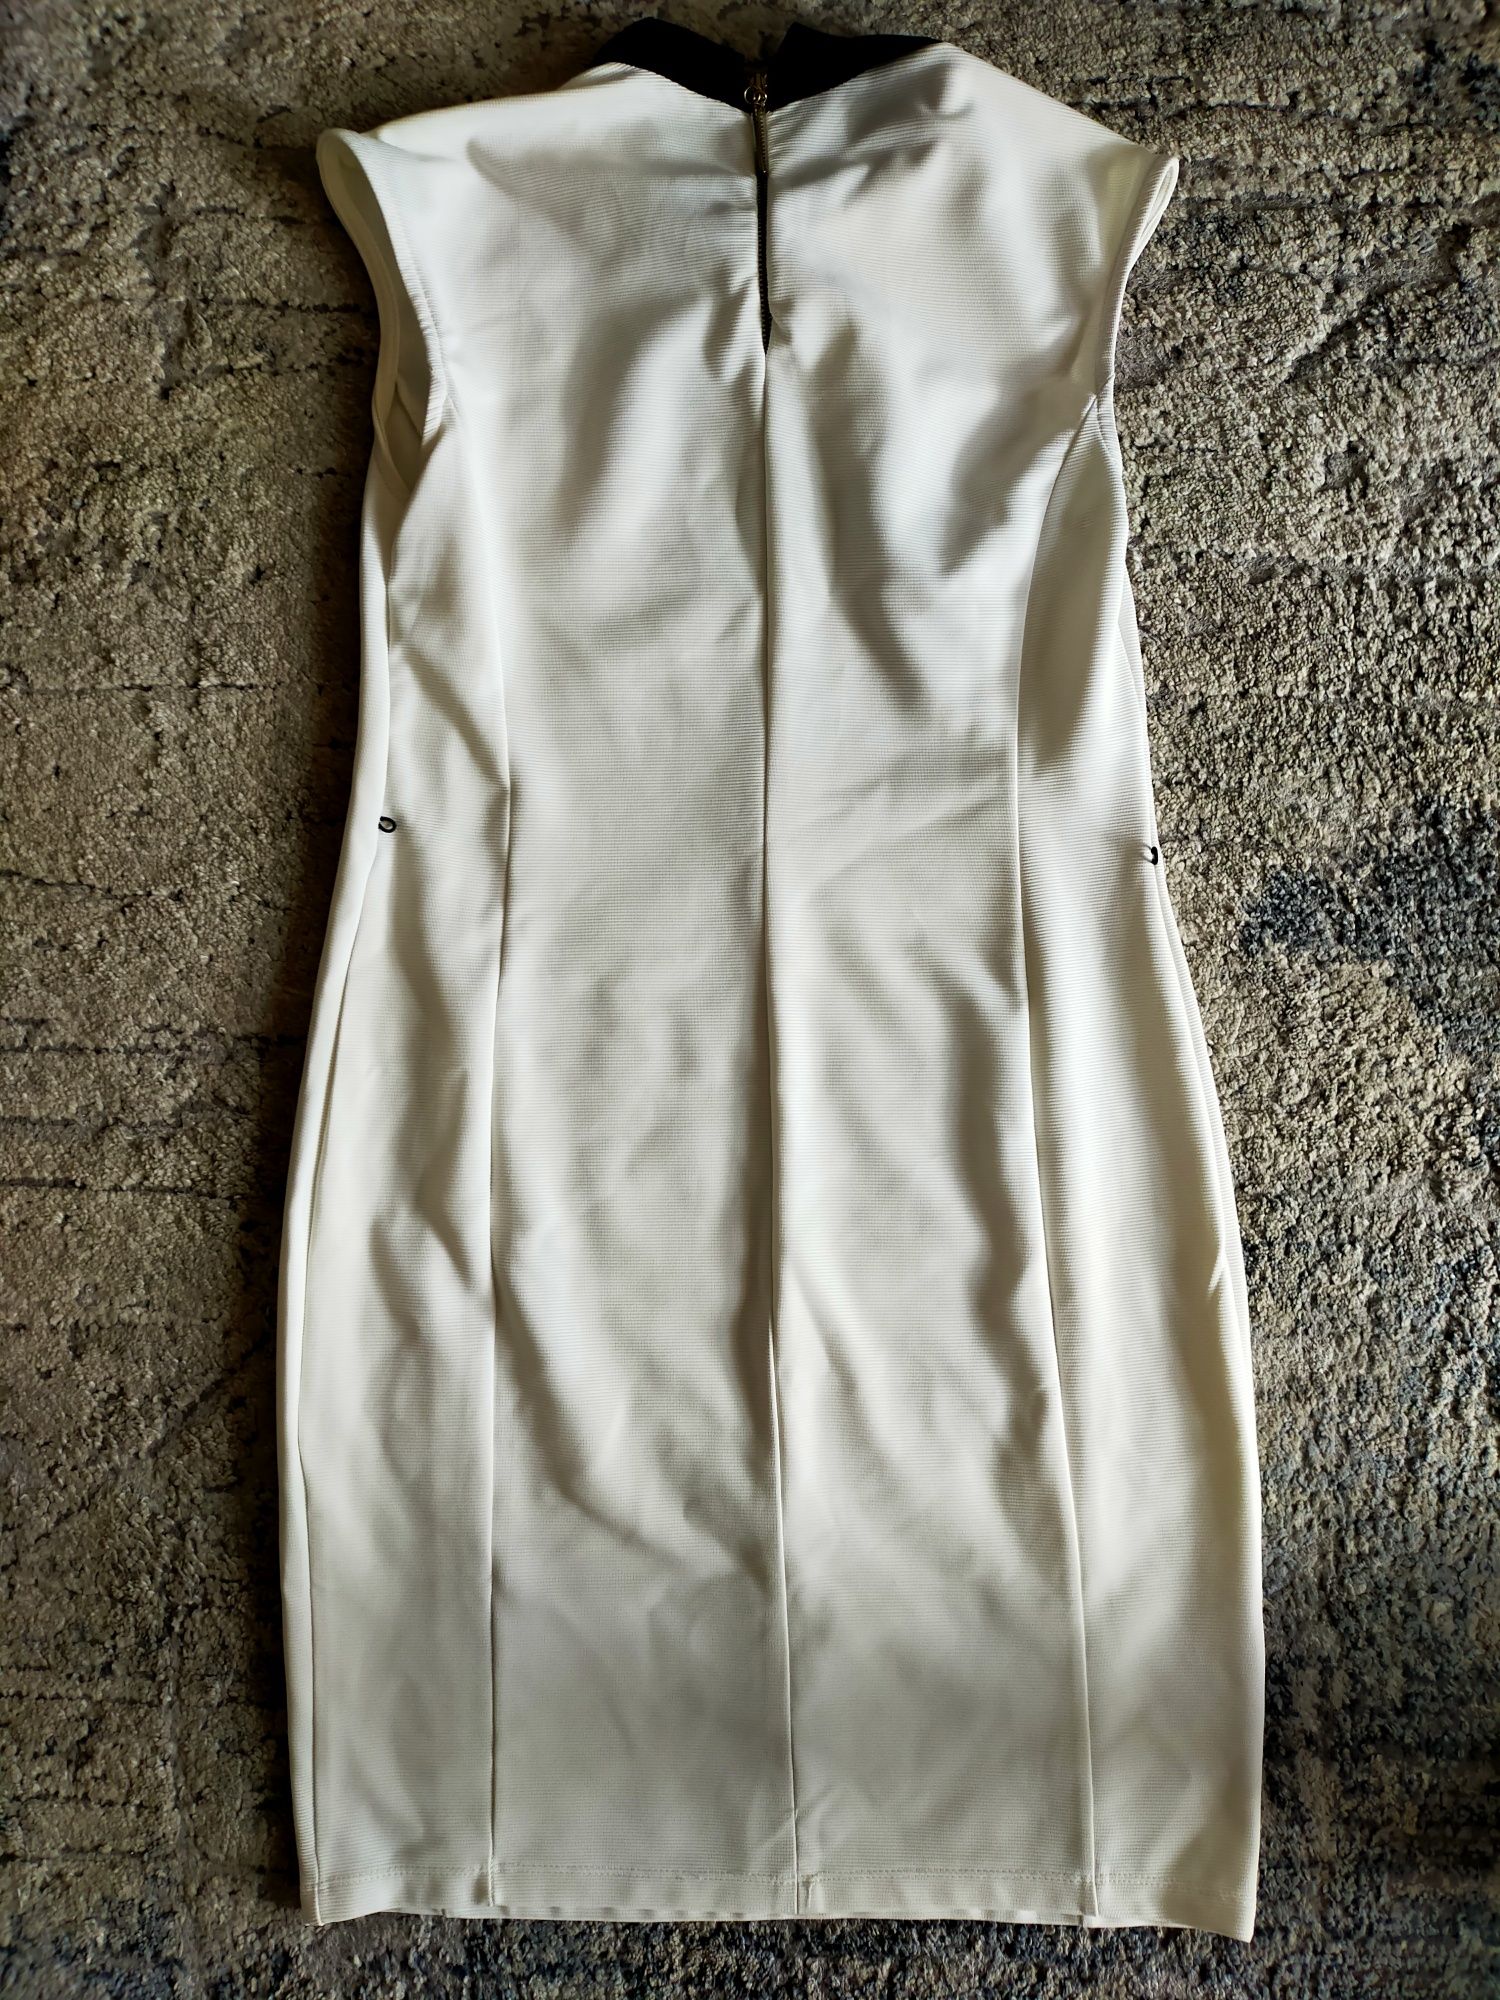 Sukienka biała z czarnym kołnierzykiem r. 38